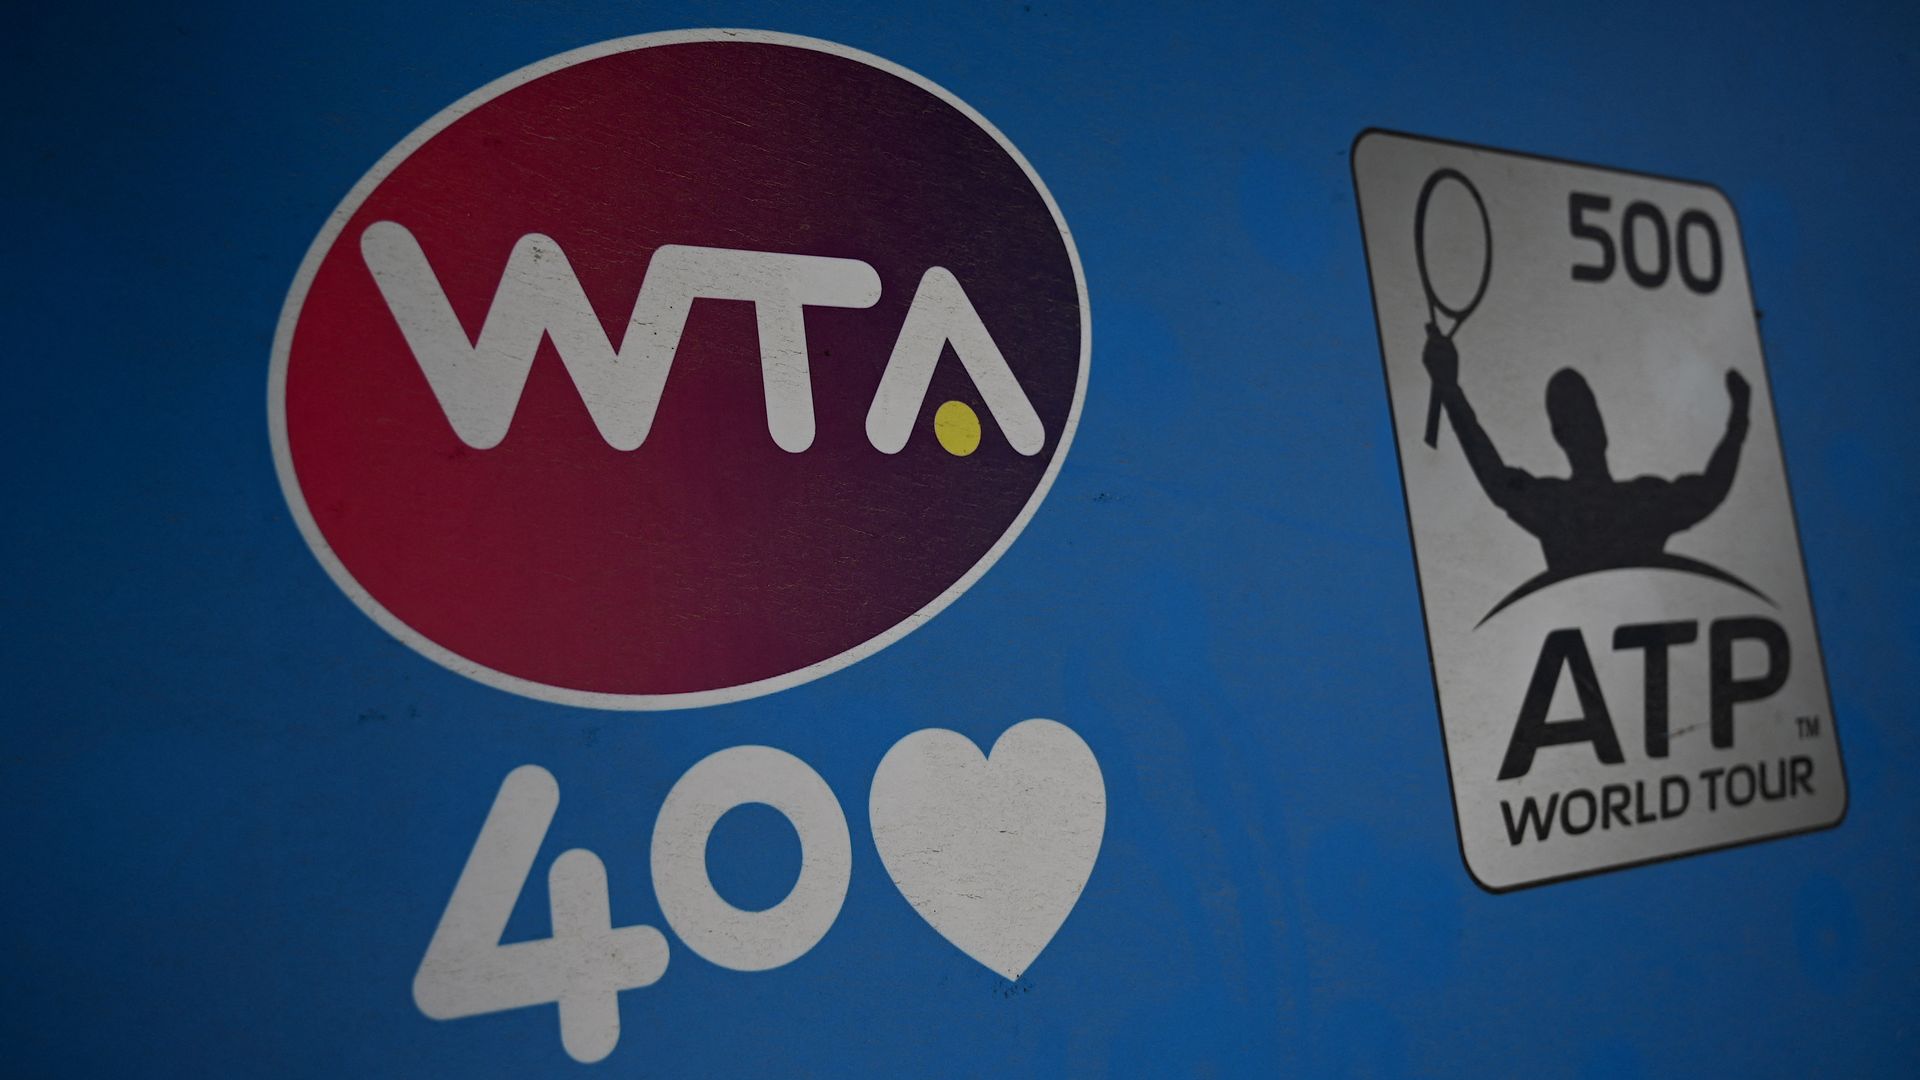 The WTA and ATP logos